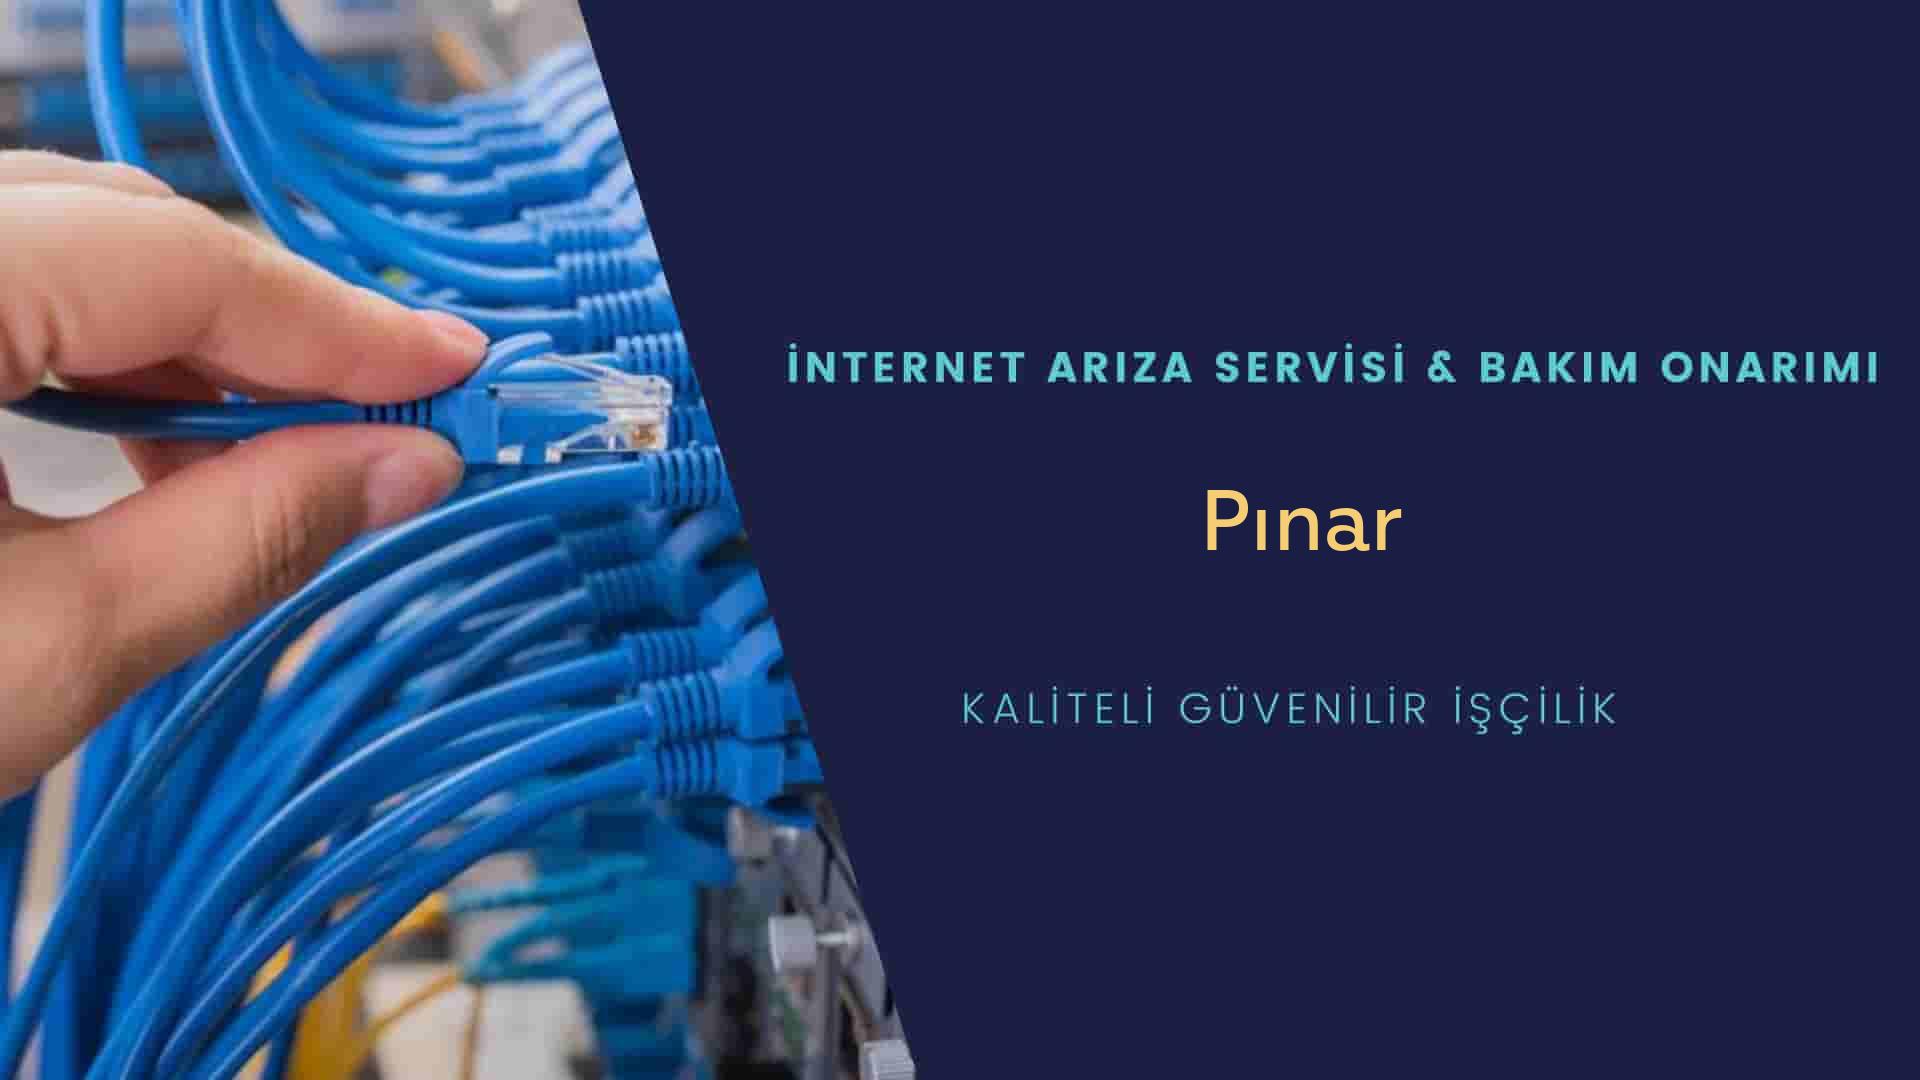 Pınar Mahallesi internet kablosu çekimi yapan yerler veya elektrikçiler mi? arıyorsunuz doğru yerdesiniz o zaman sizlere 7/24 yardımcı olacak profesyonel ustalarımız bir telefon kadar yakındır size.